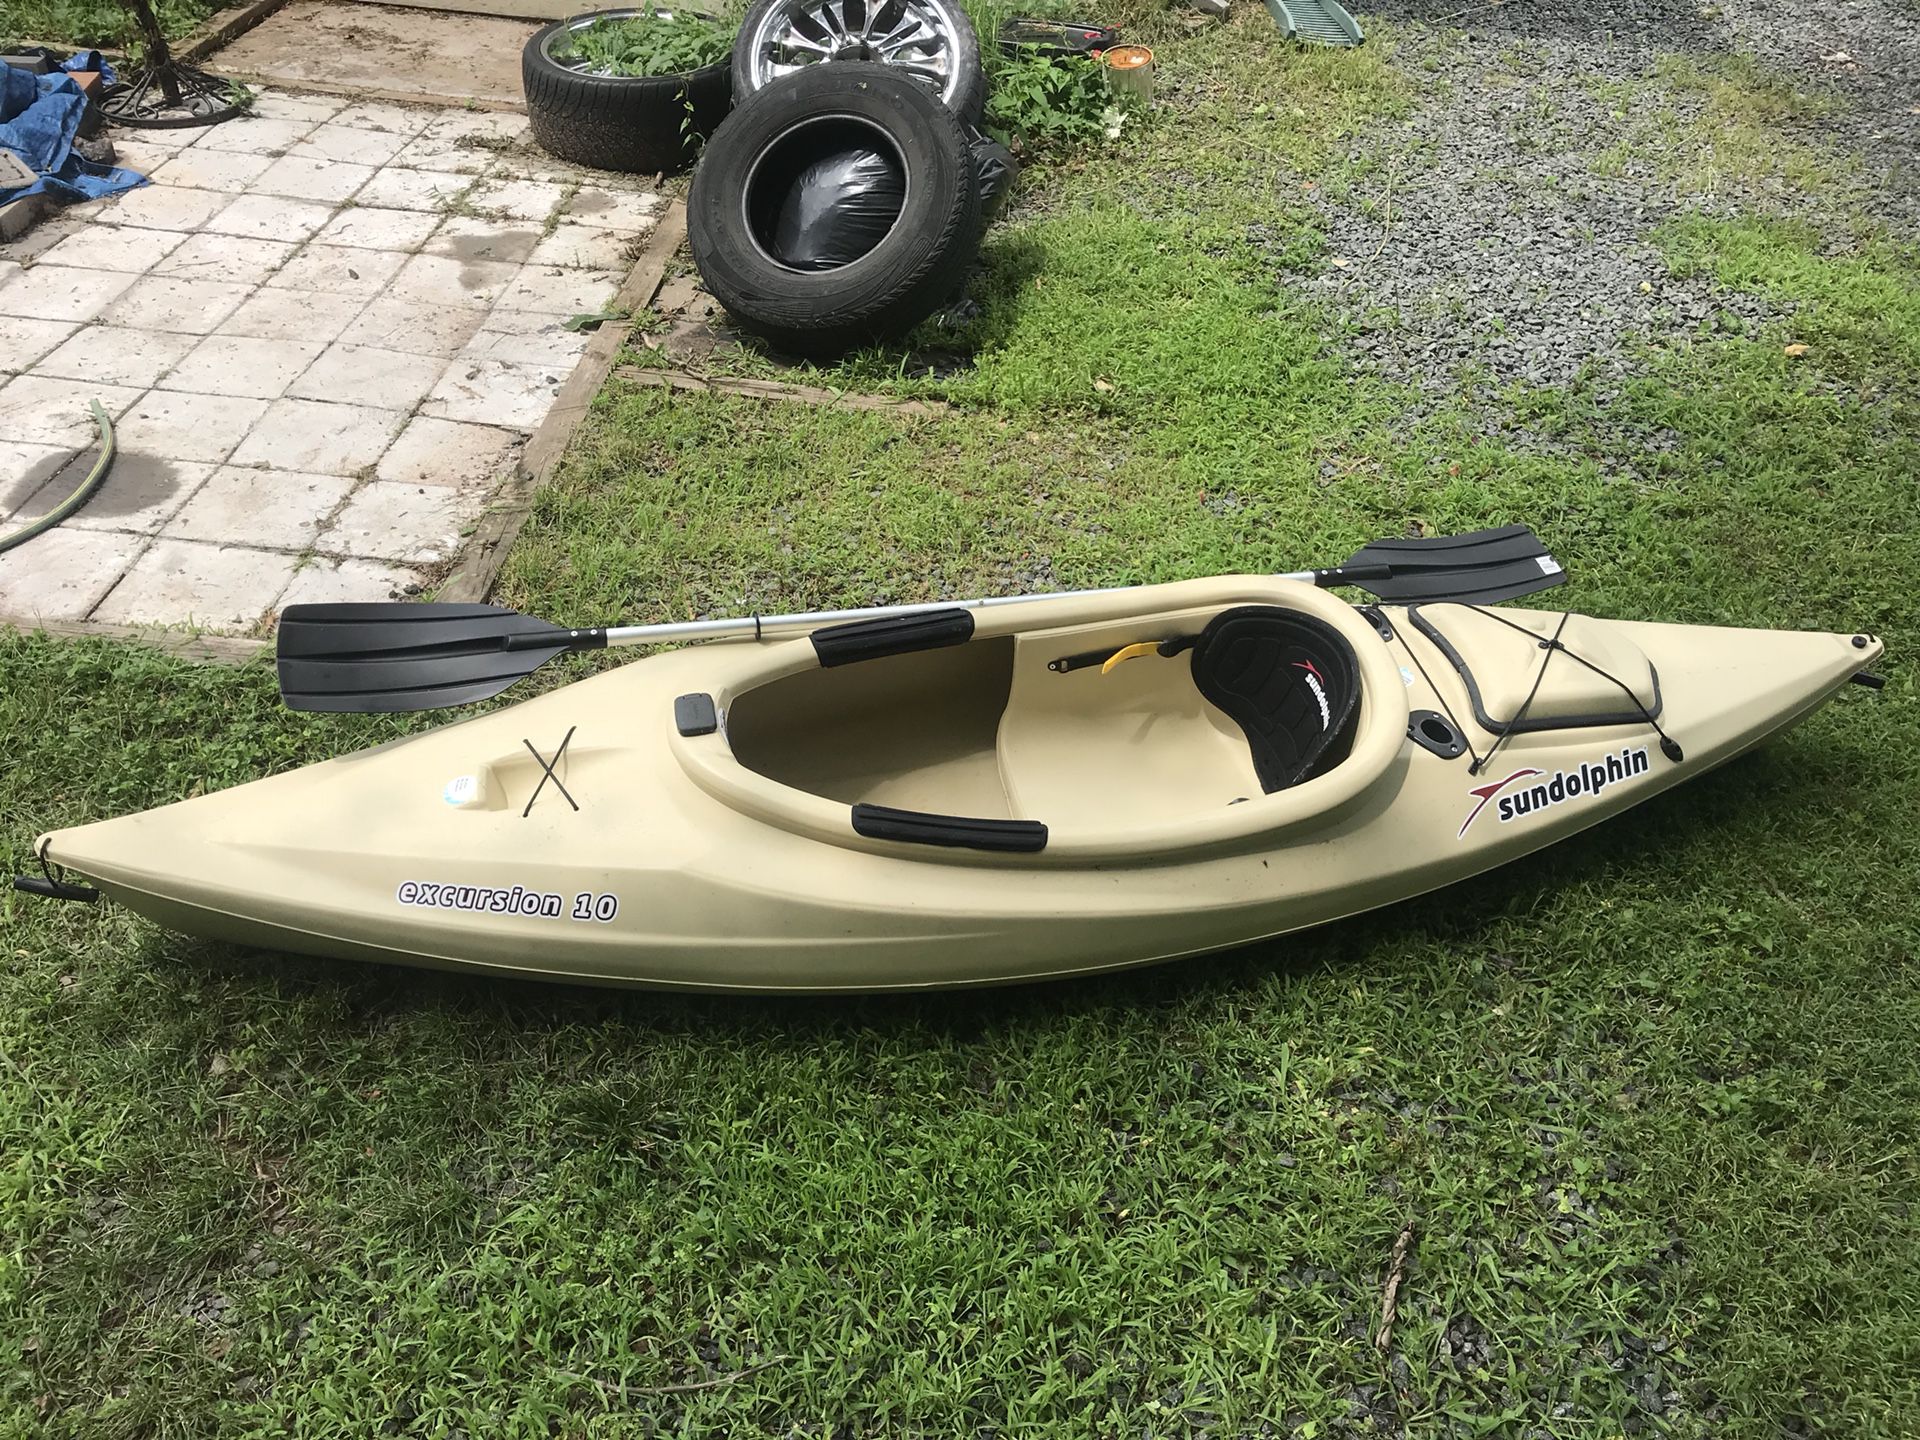 Sundolphin 10’ kayak